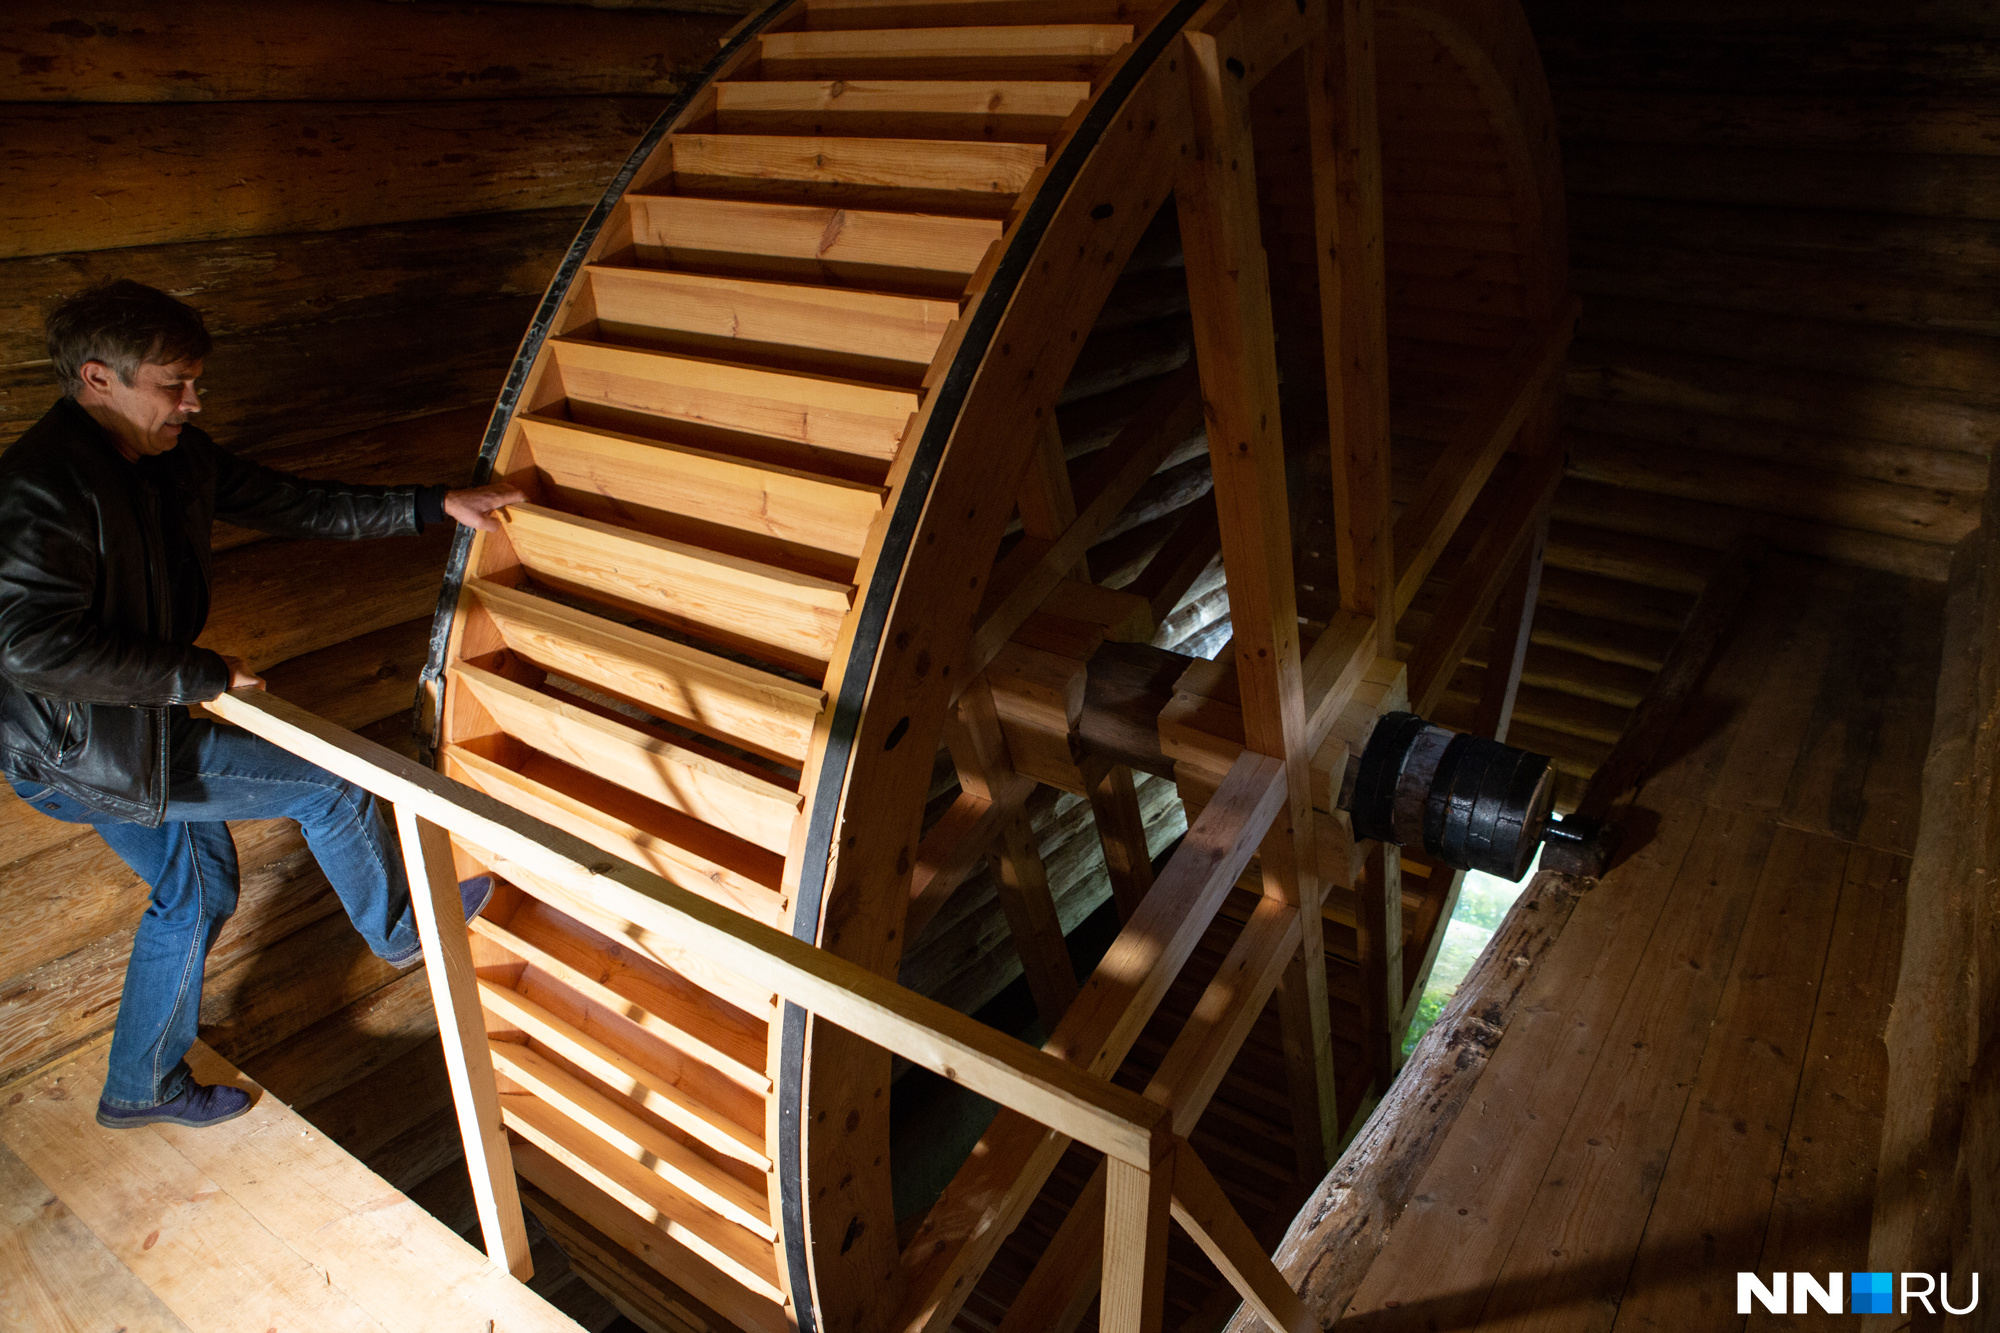 Диаметр колеса водяной мельницы — пять метров